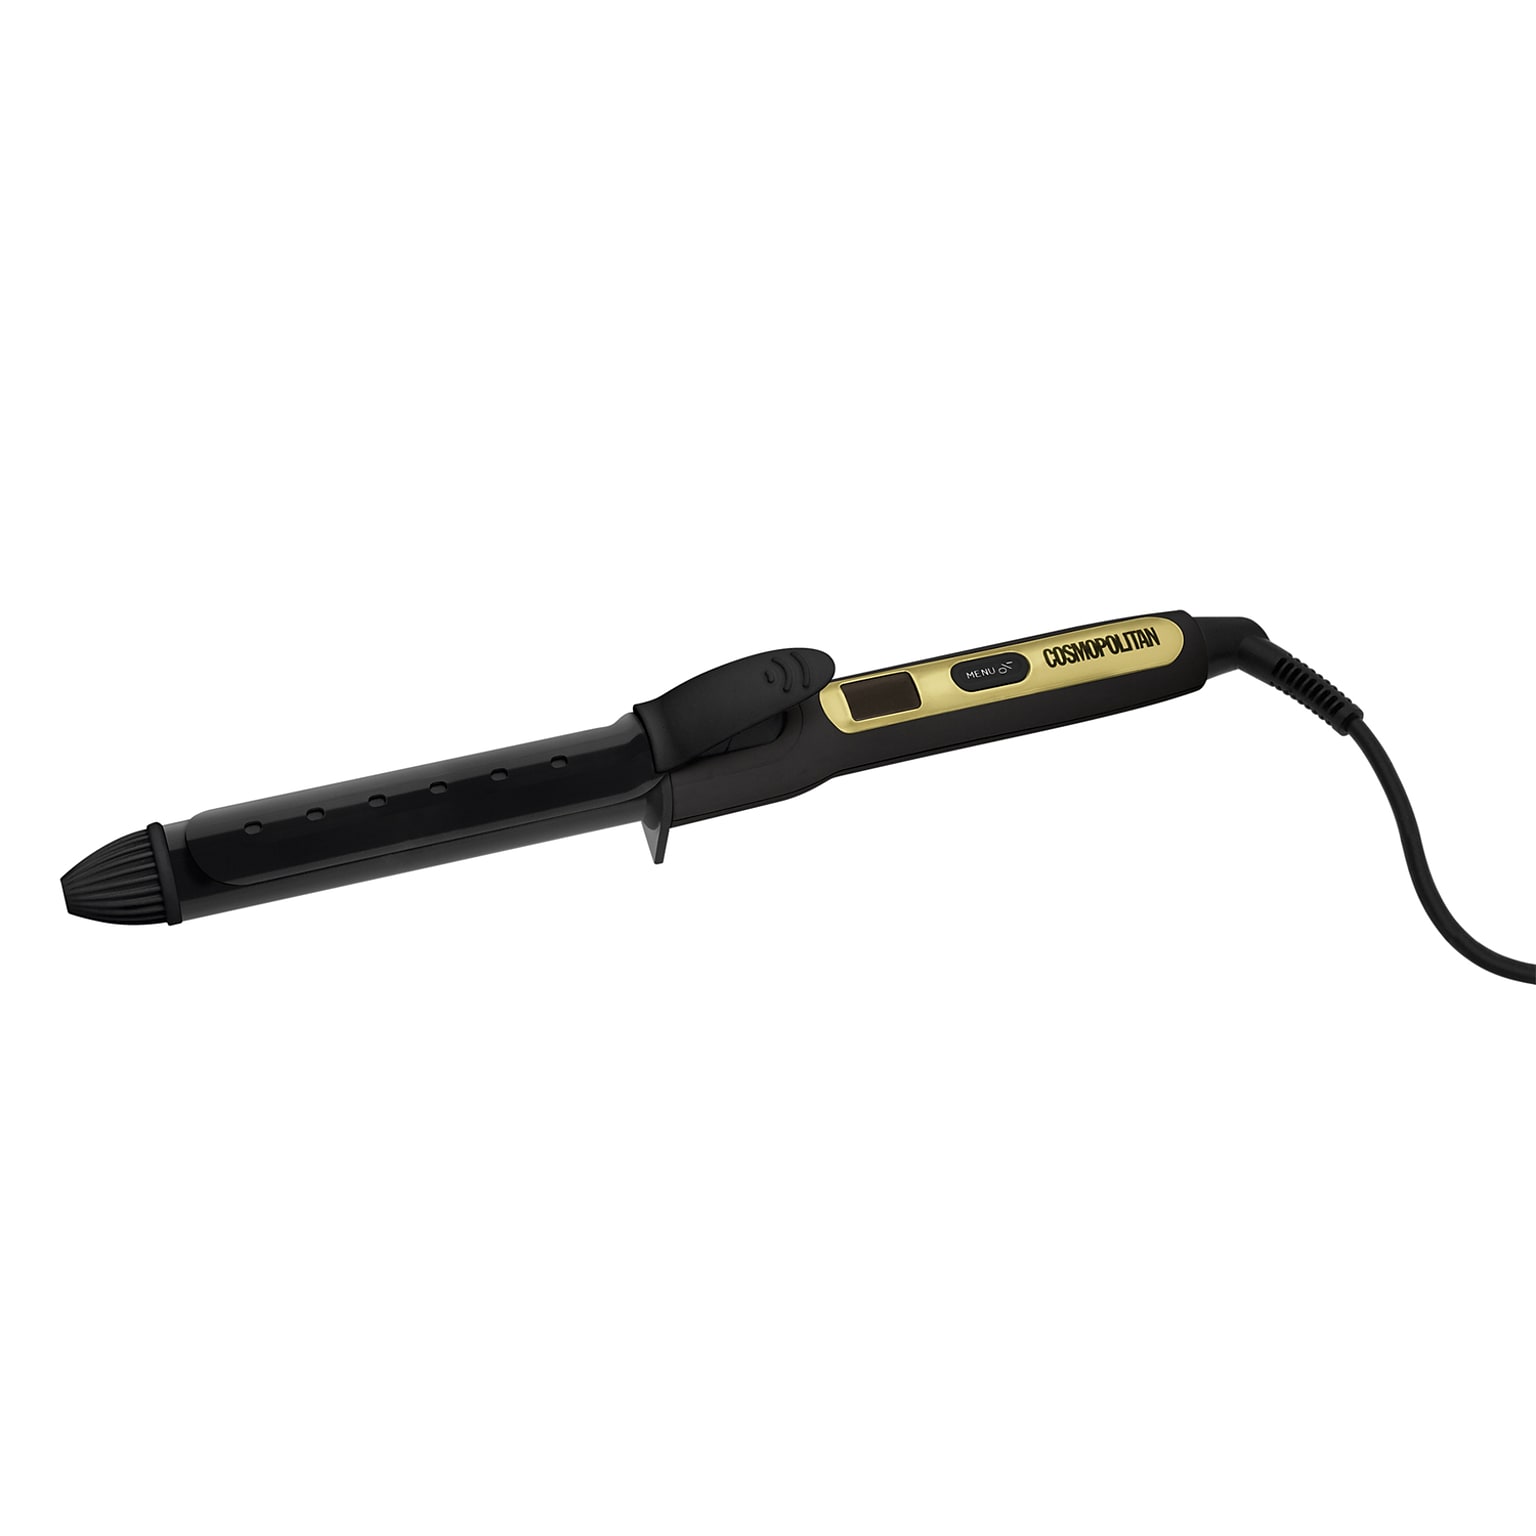 Cosmopolitan Ceramic Hair Curler, 1-Inch, Black & Gold, (VRD928982383)